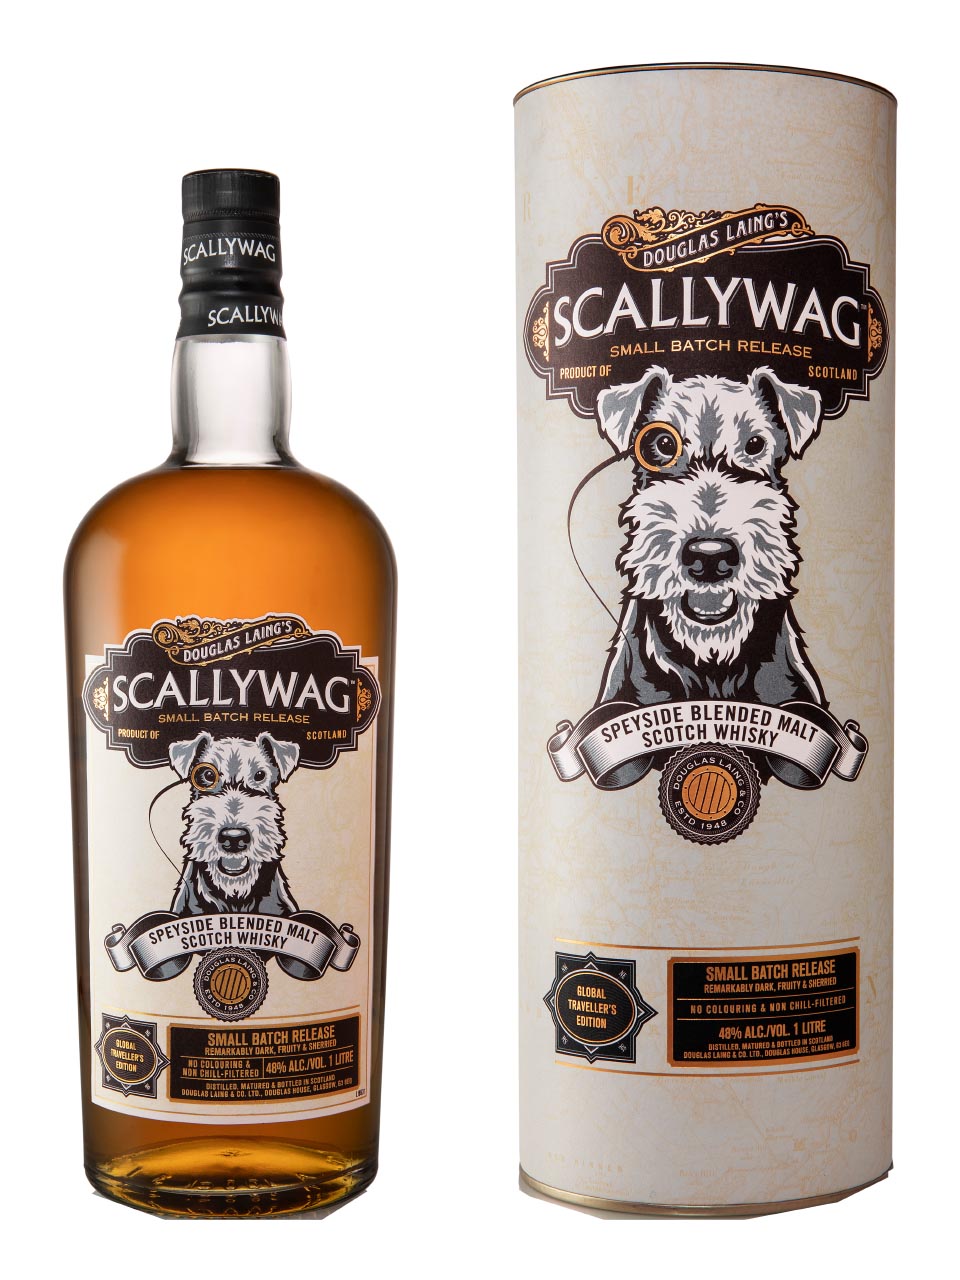 Douglas Laing Scallywag Speyside Blended Malt Scotch Whisky 48% 1L gift pack null - onesize - 1